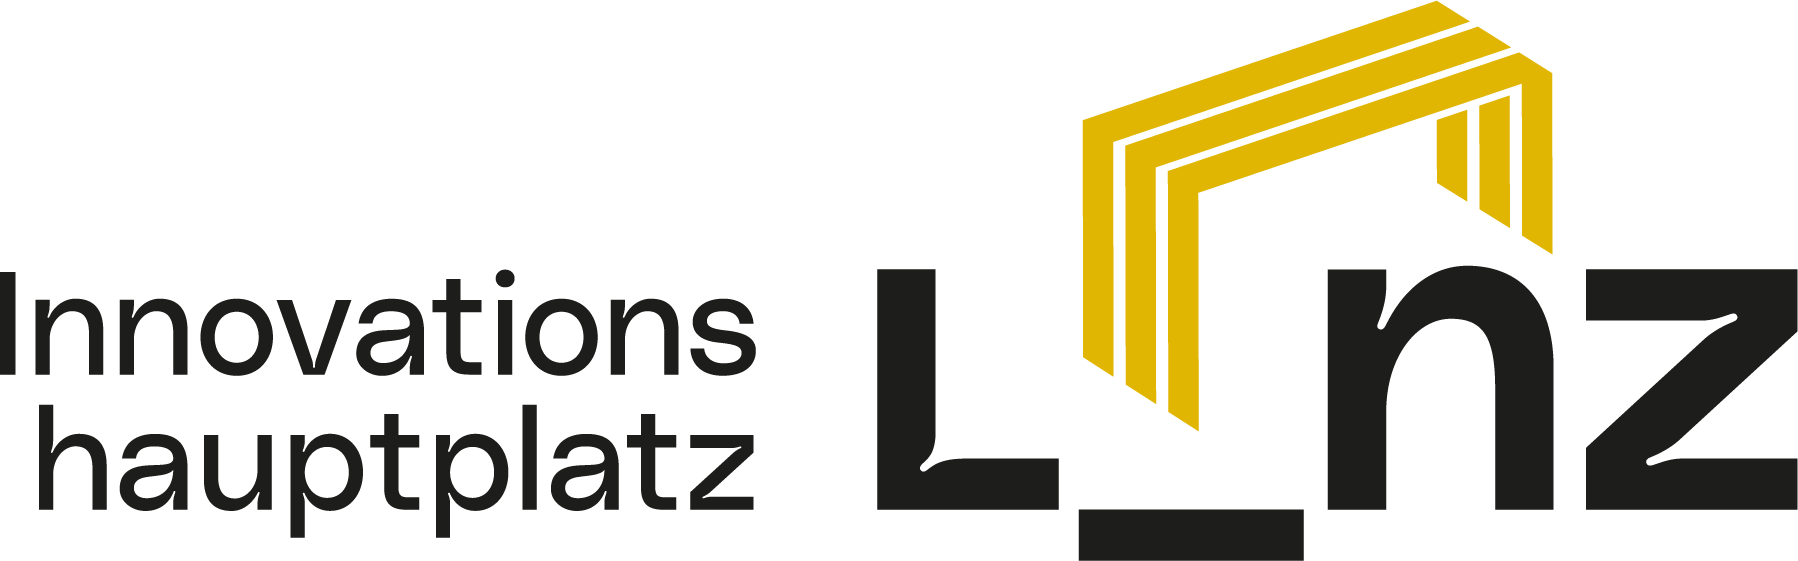 Innovationshauptplatz Linz